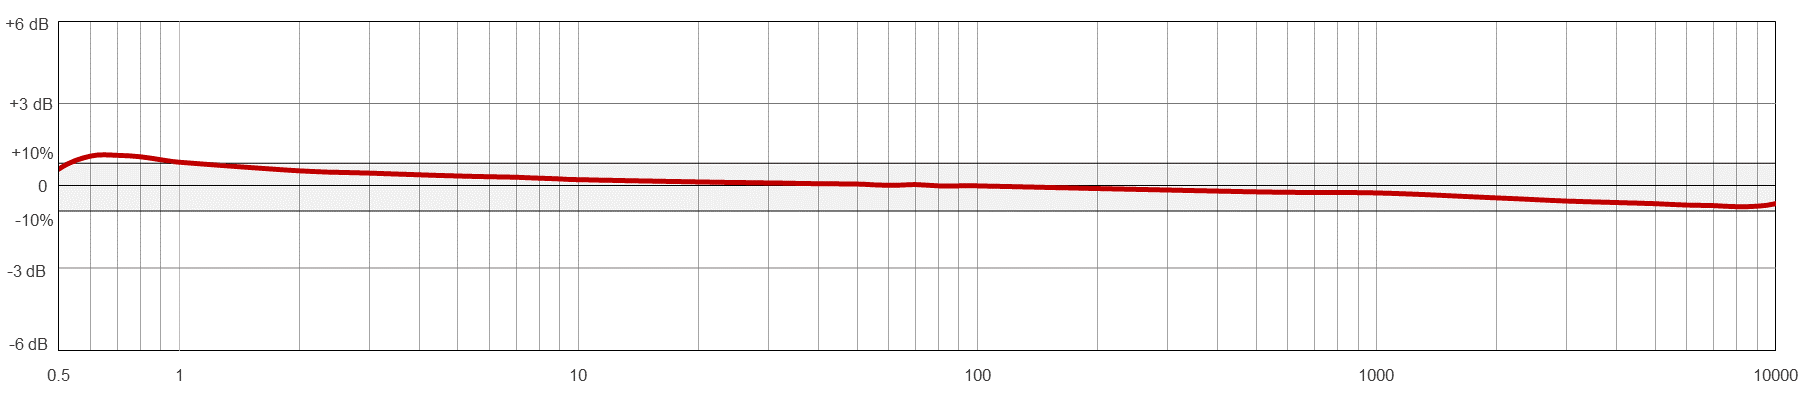 AC104-M12A典型频率响应